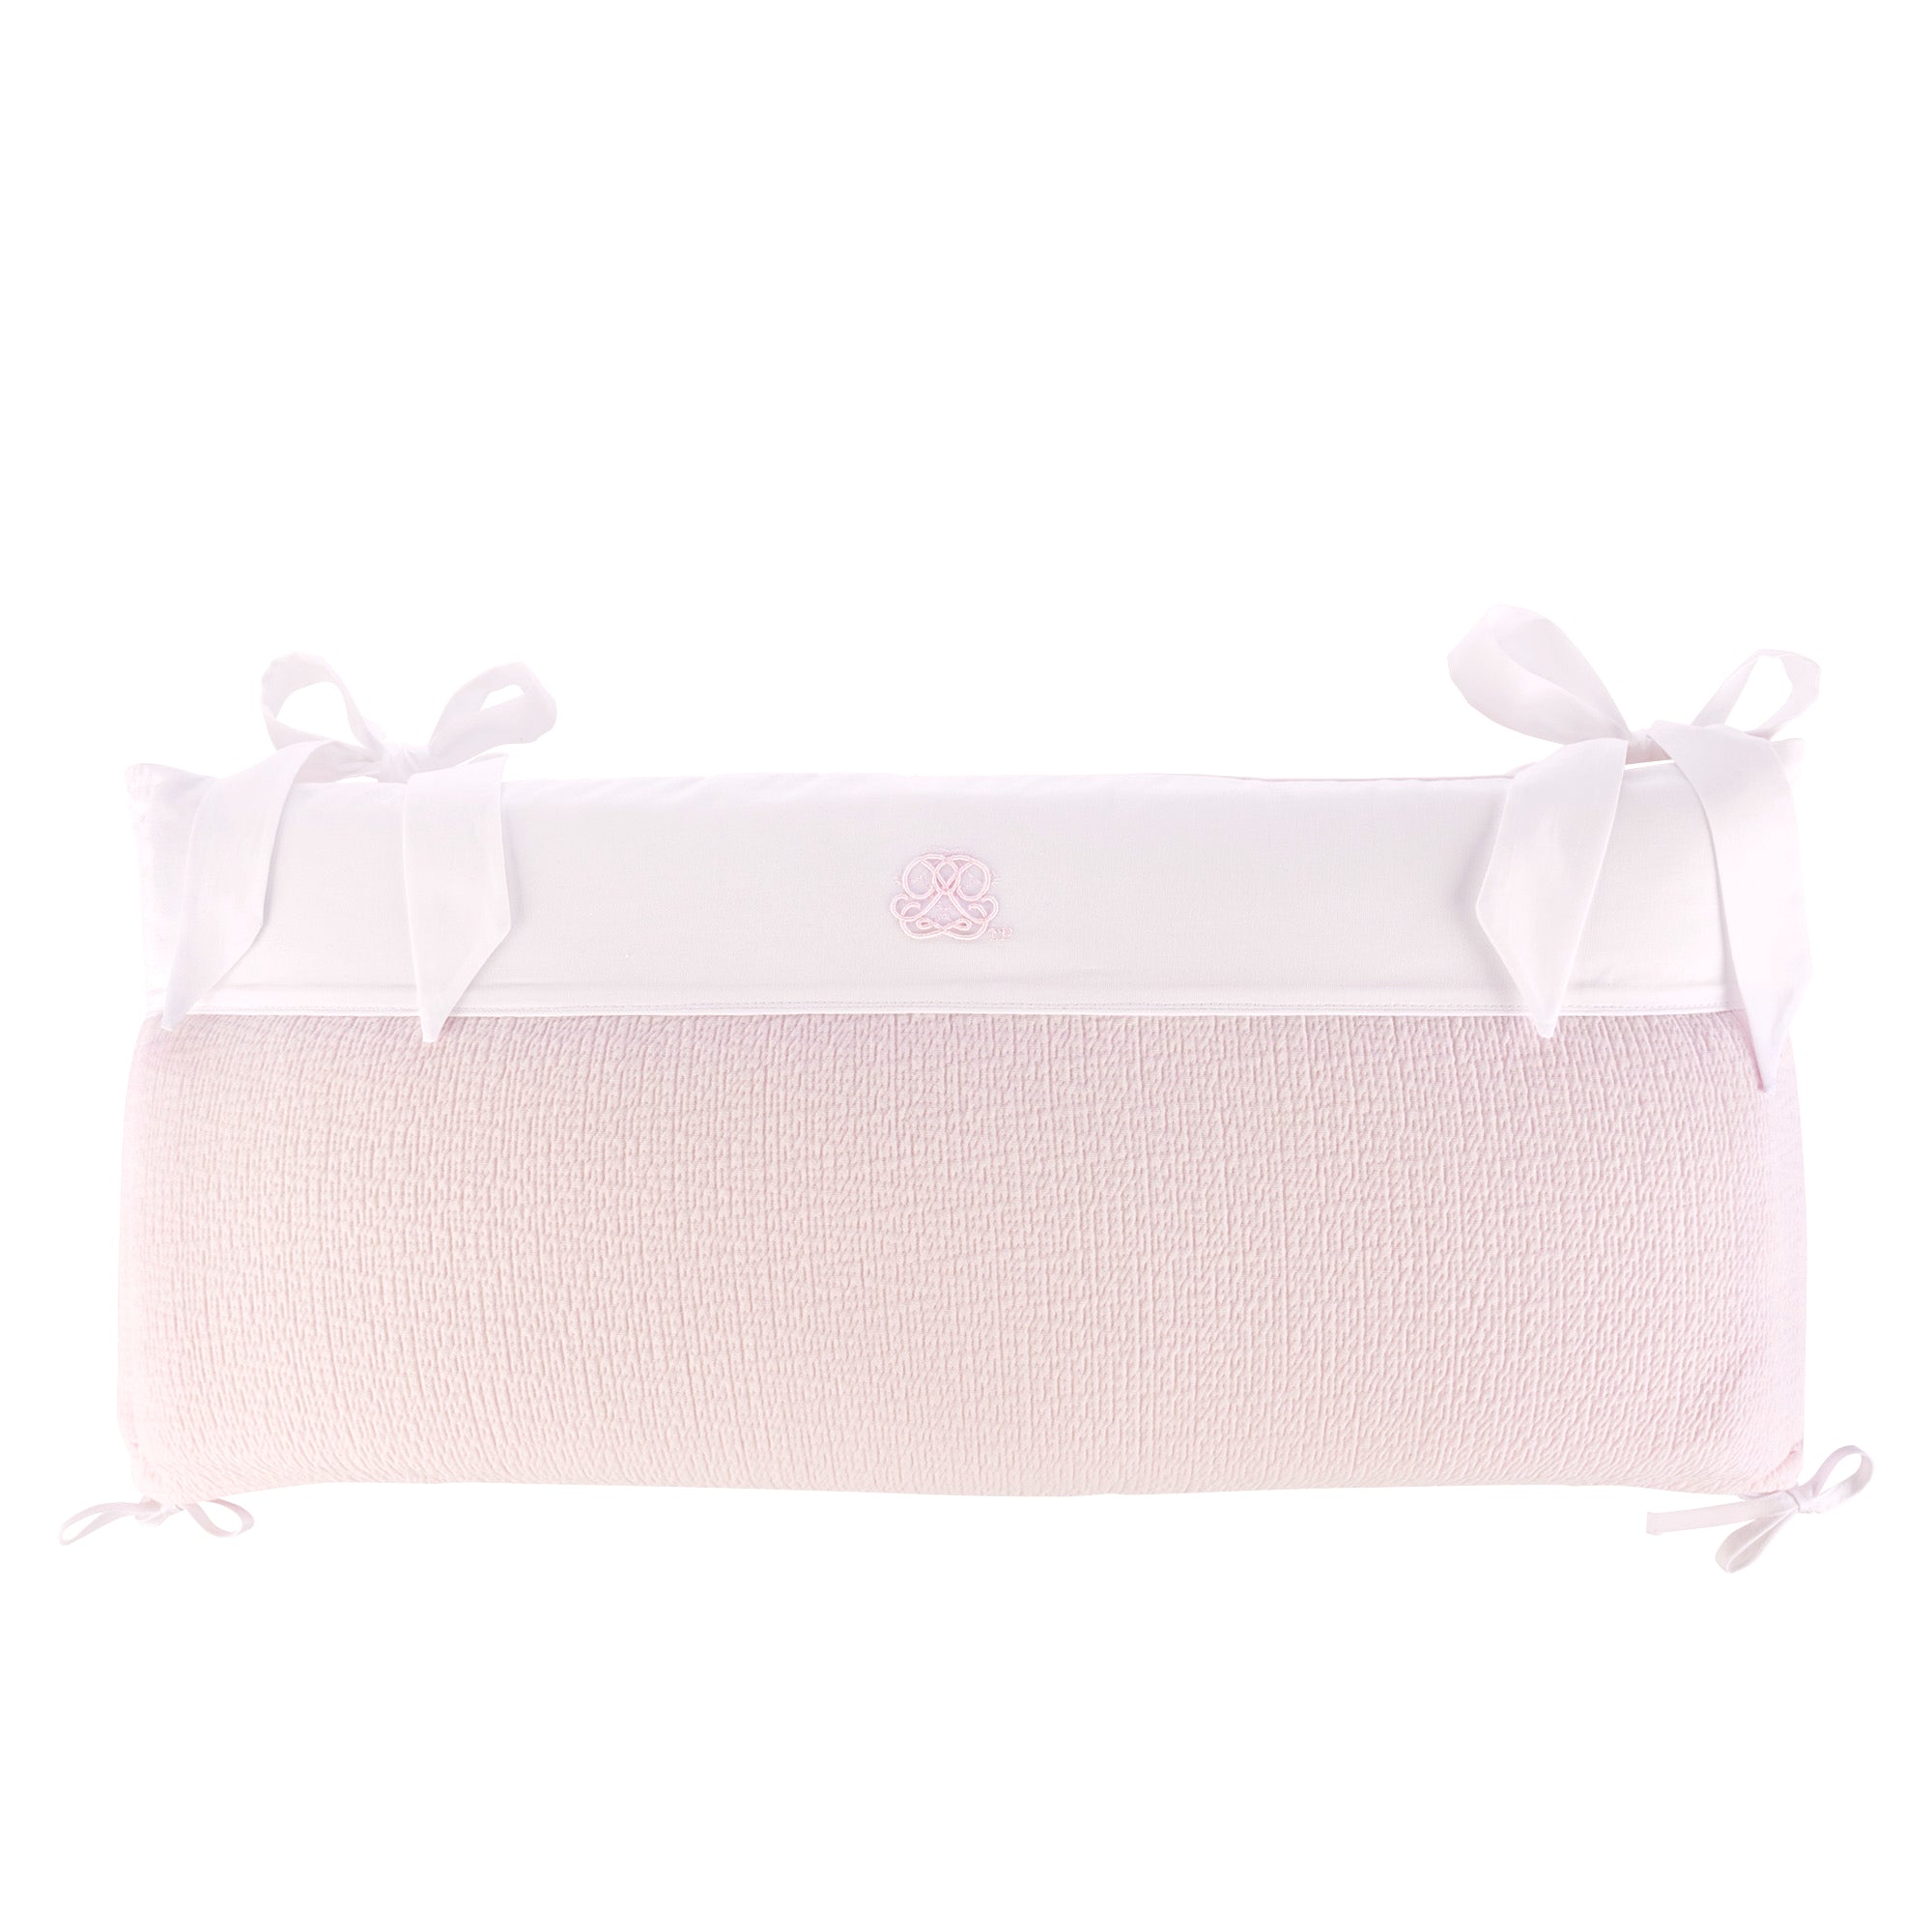 Theophile & Patachou Cot bed Bumper 70 cm - Cotton Pink